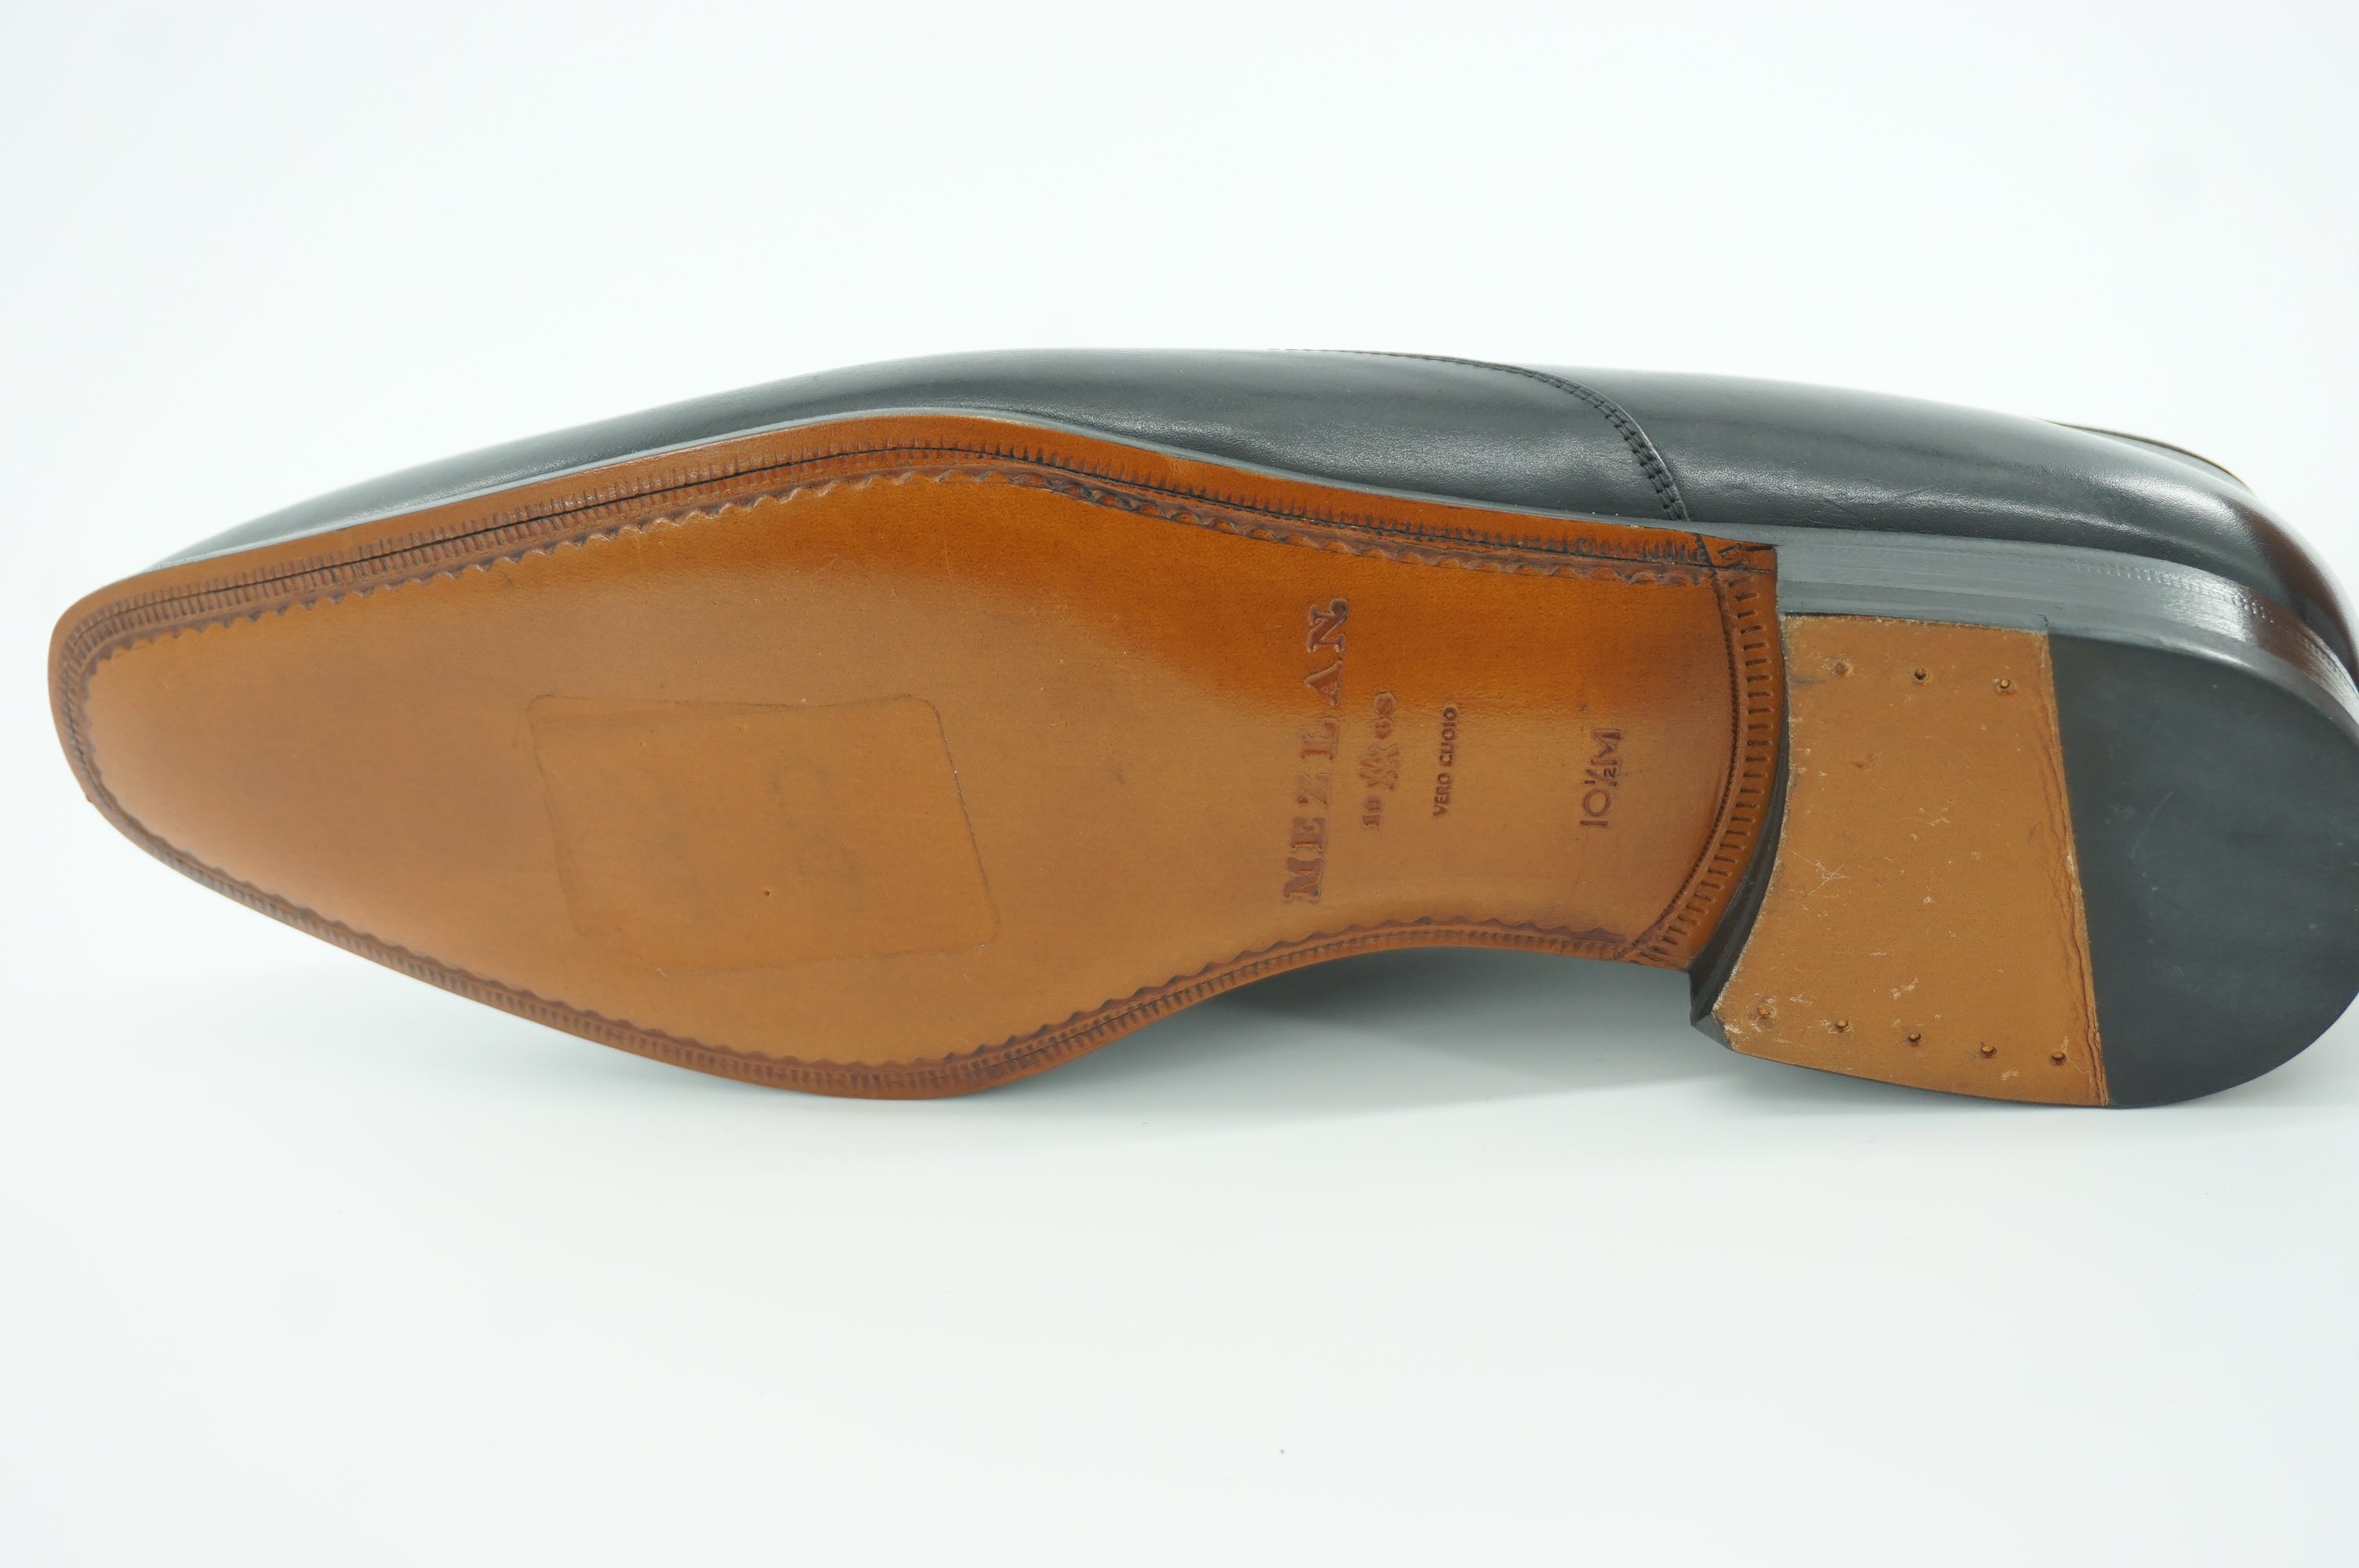 Mezlan Falcon Black Leather Dress Shoes Size 10.5 Logo Bit New $425